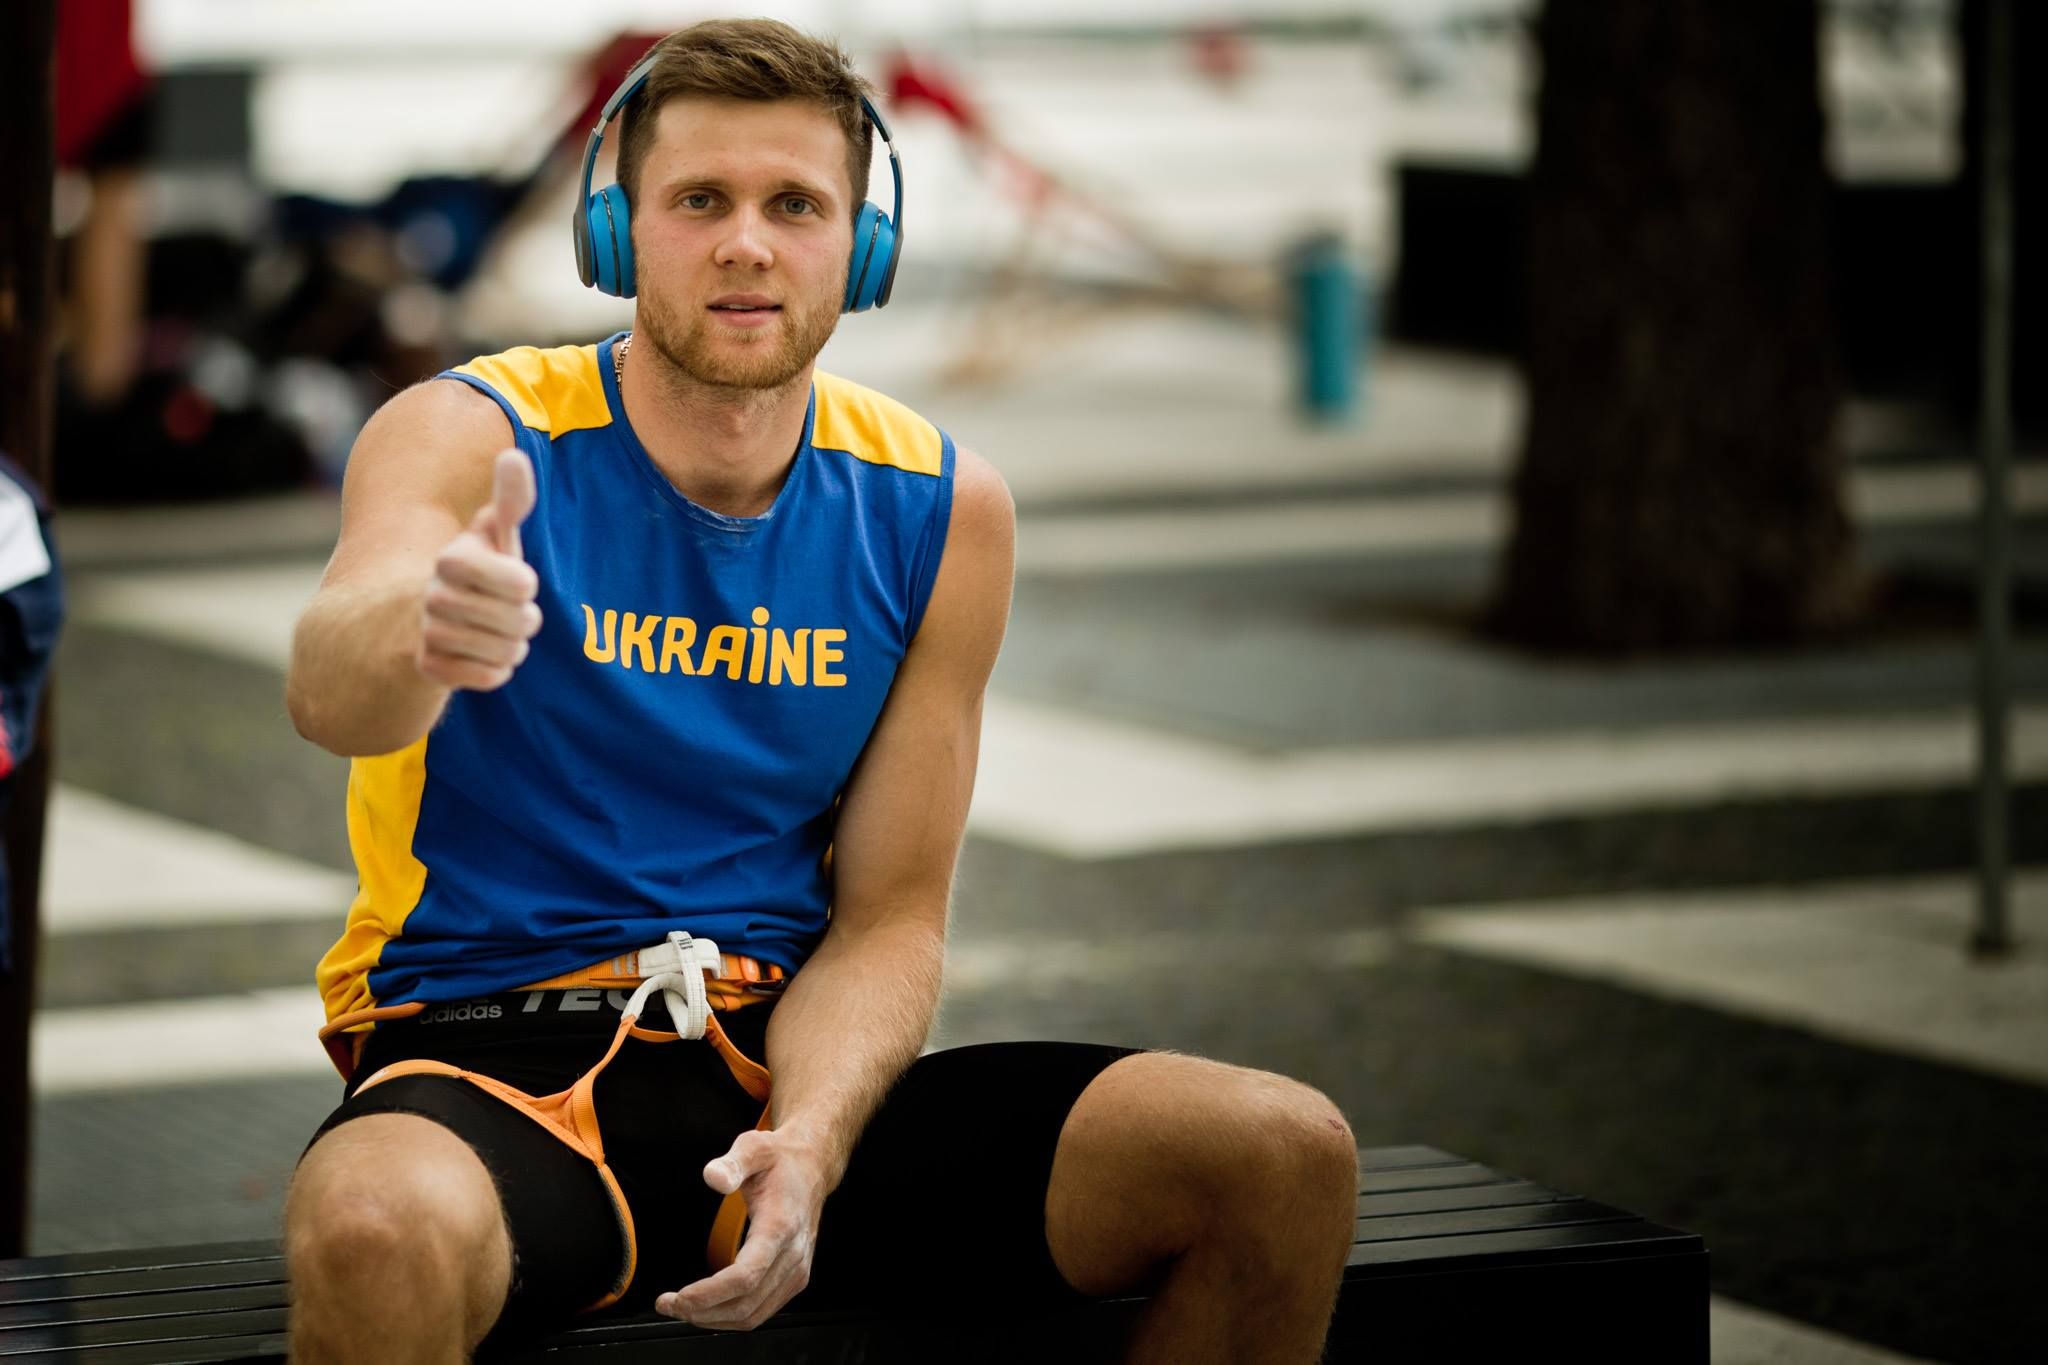 Украинец завоевал золото на Кубке мира по скалолазанию, победив в финале россиянина